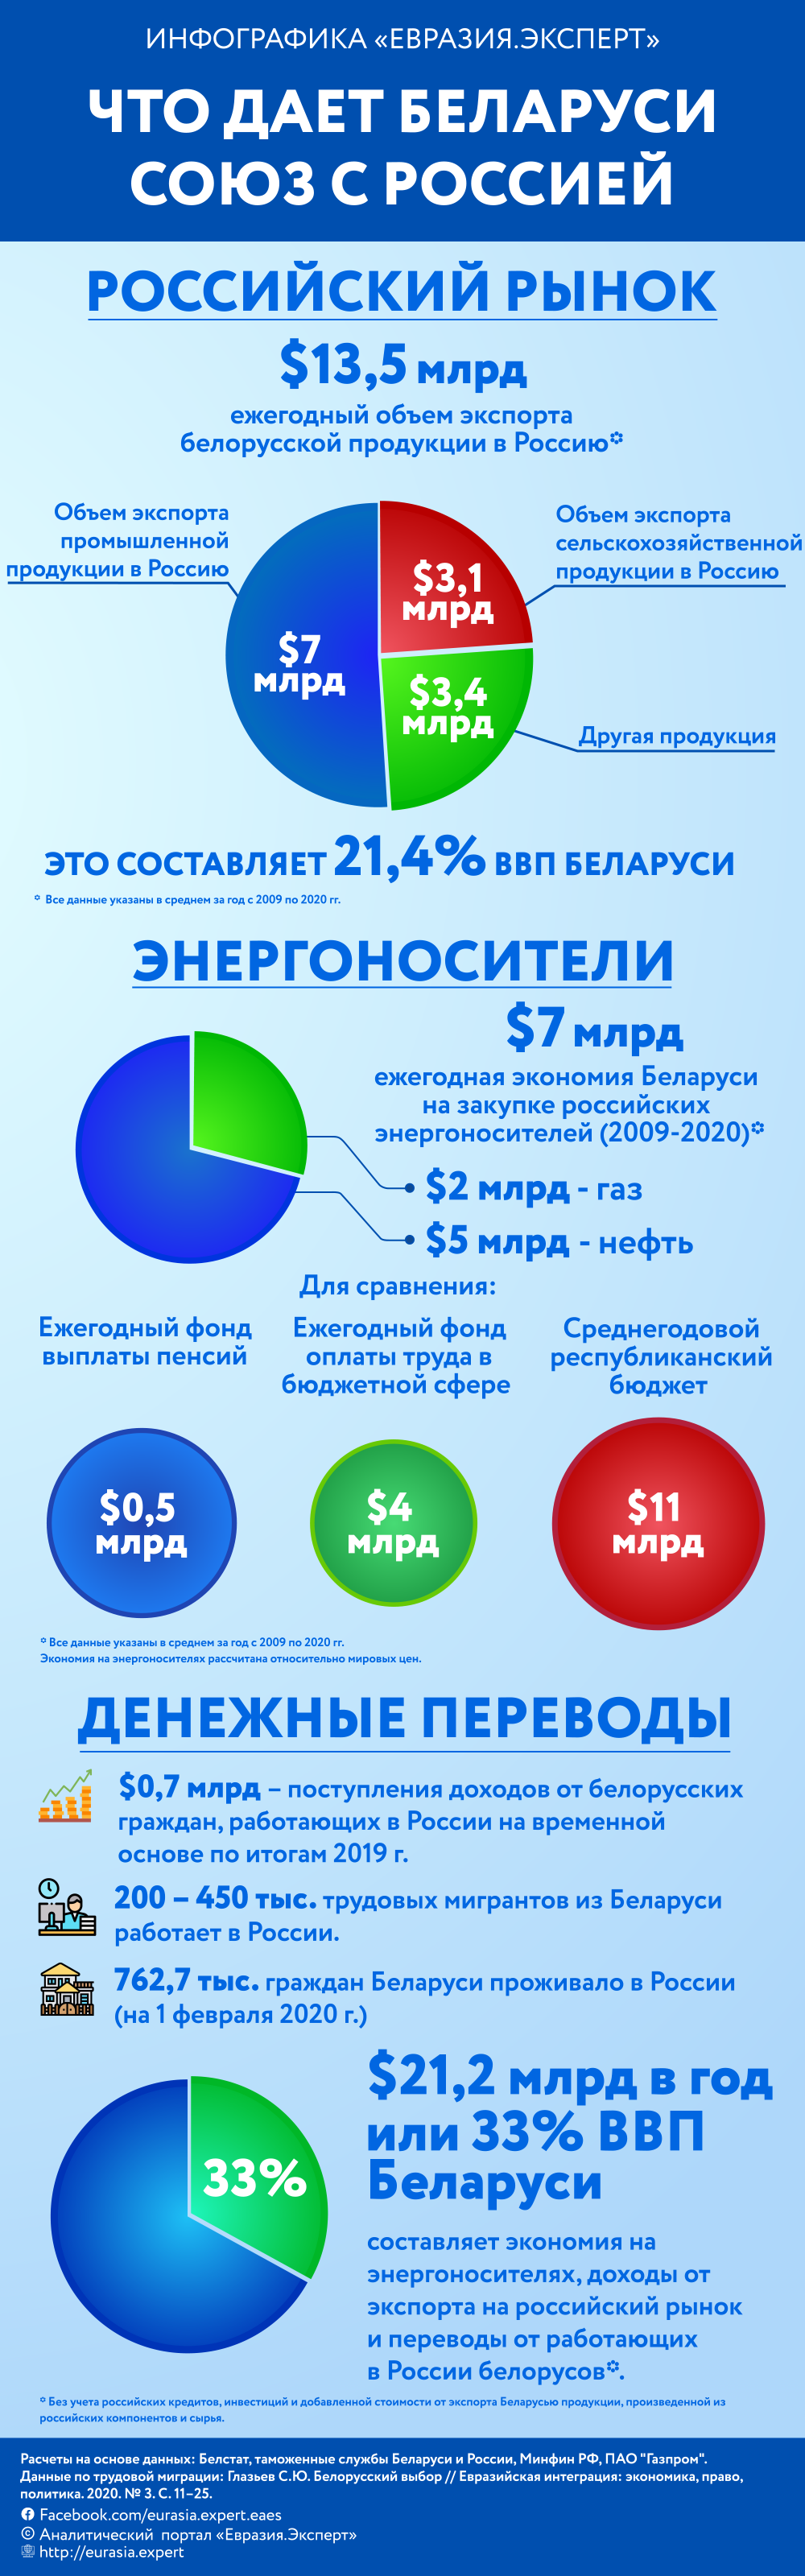 Инфографика: Что дает Беларуси союз с Россией